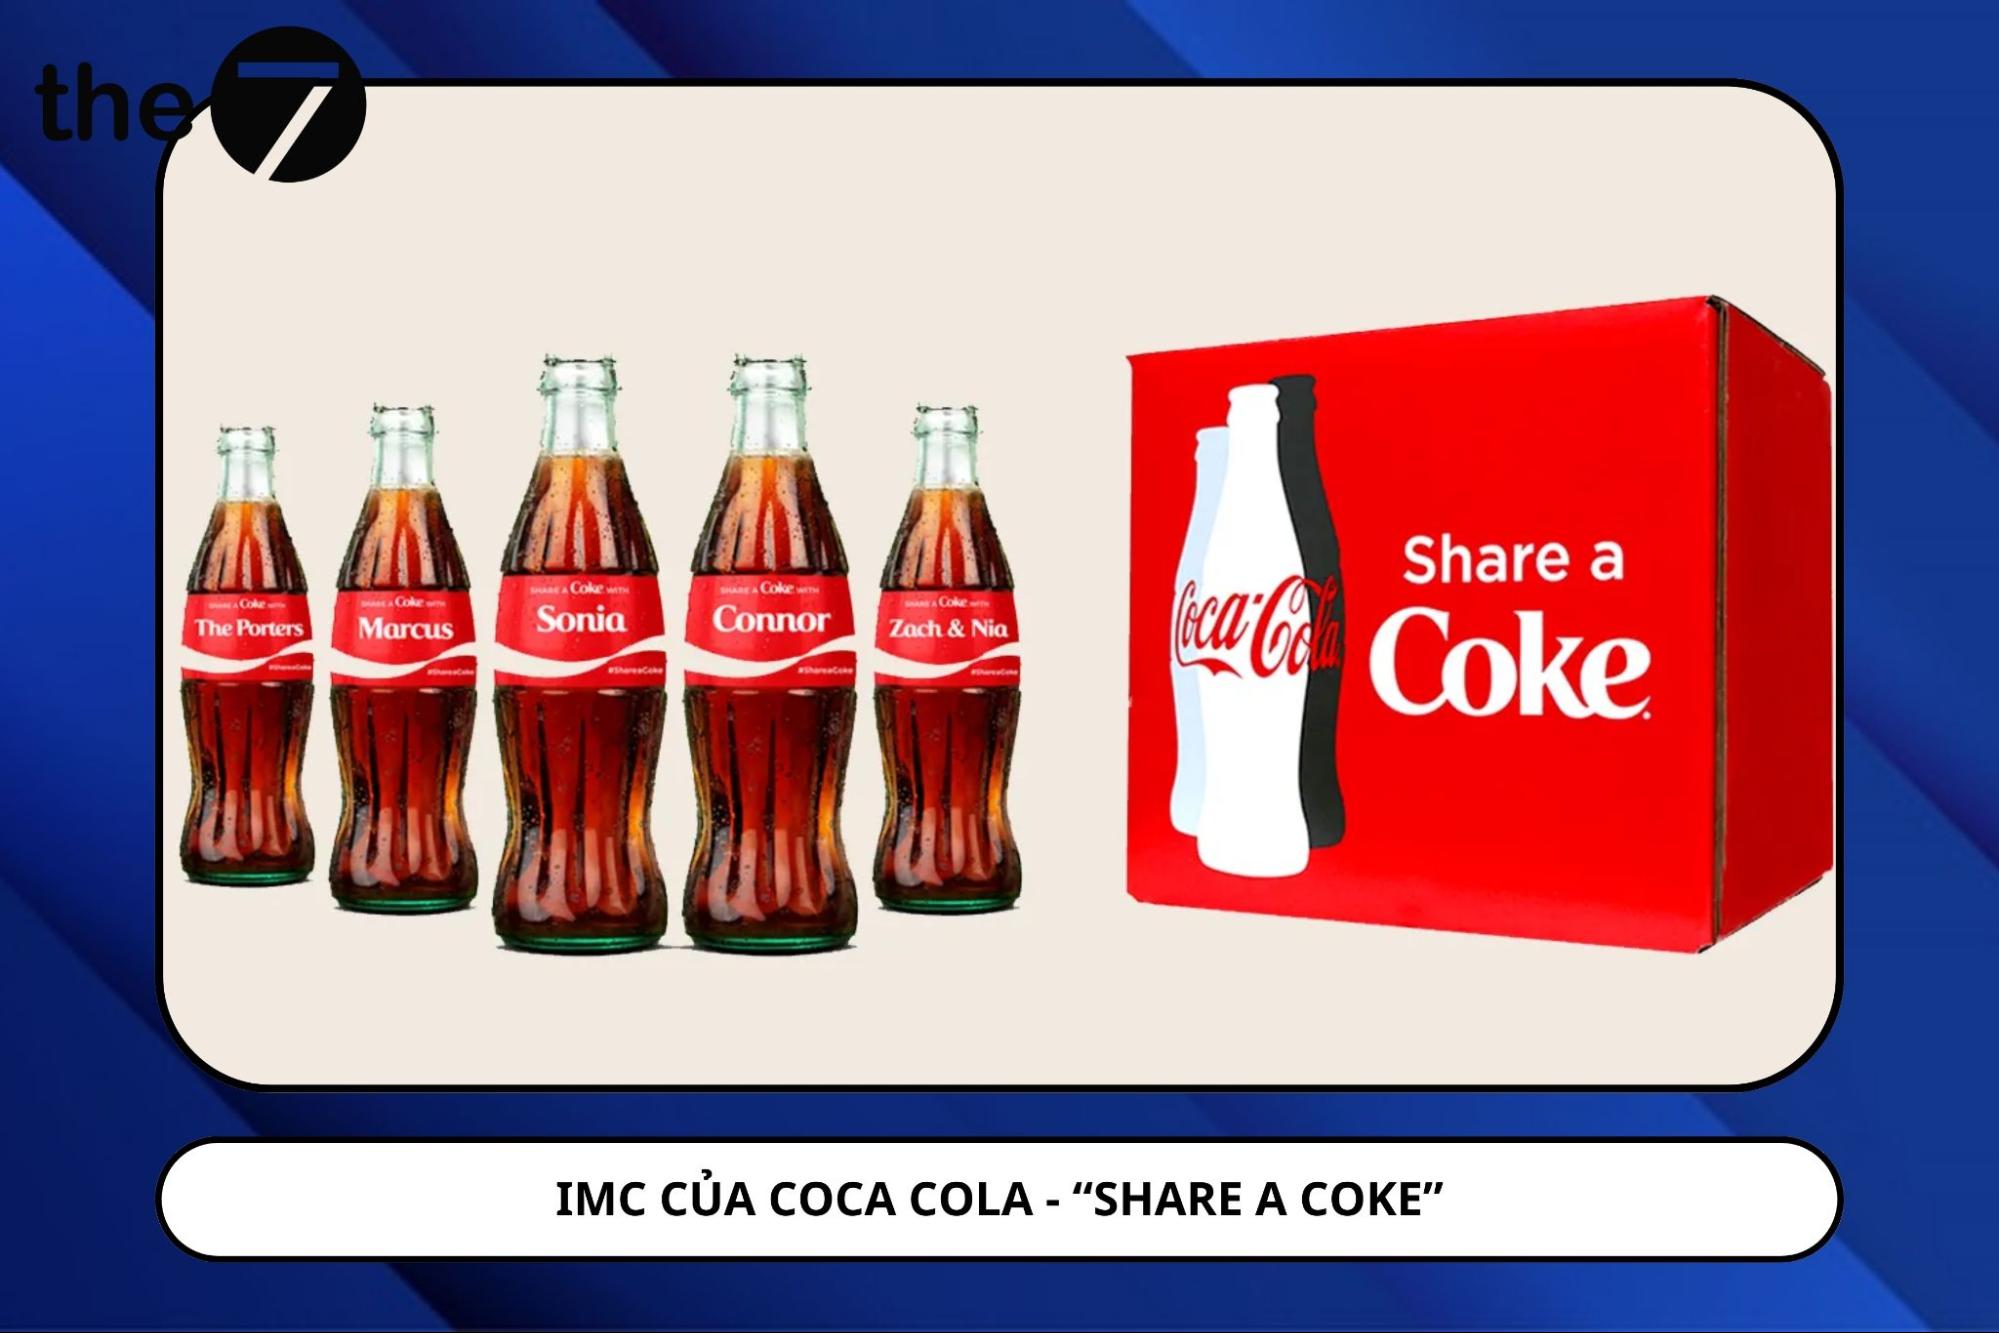 Chiến dịch IMC của Coca Cola - “SHARE A COKE”